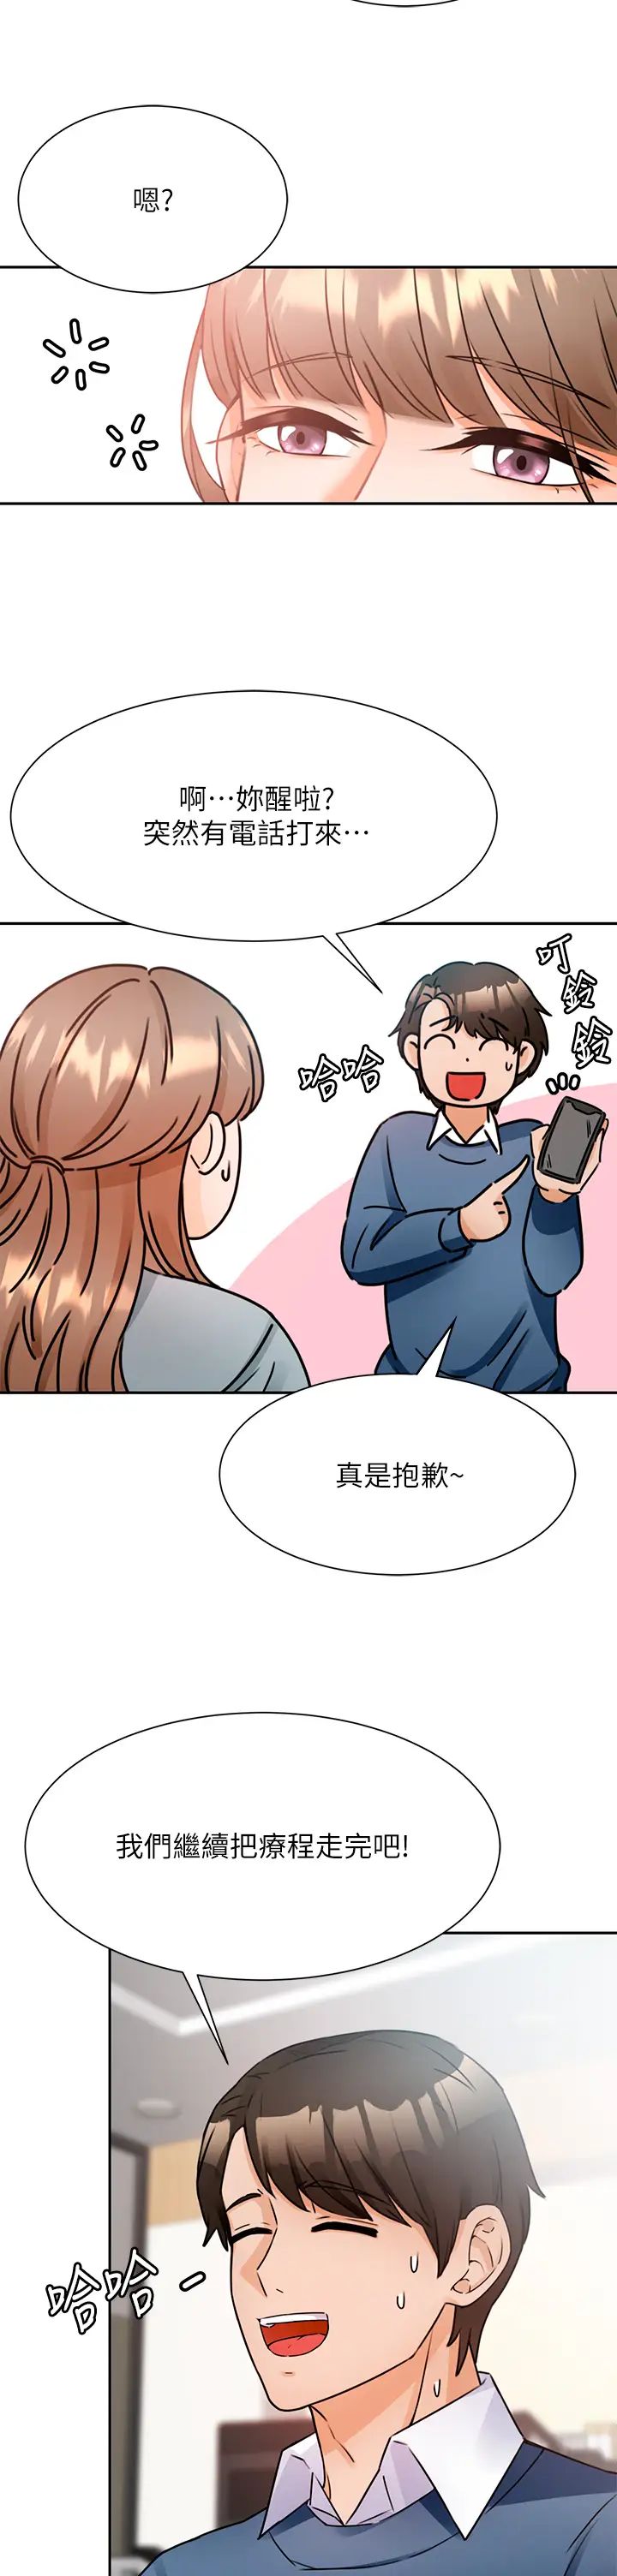 韩国污漫画 催眠治欲師 第2话病人的特殊要求 30